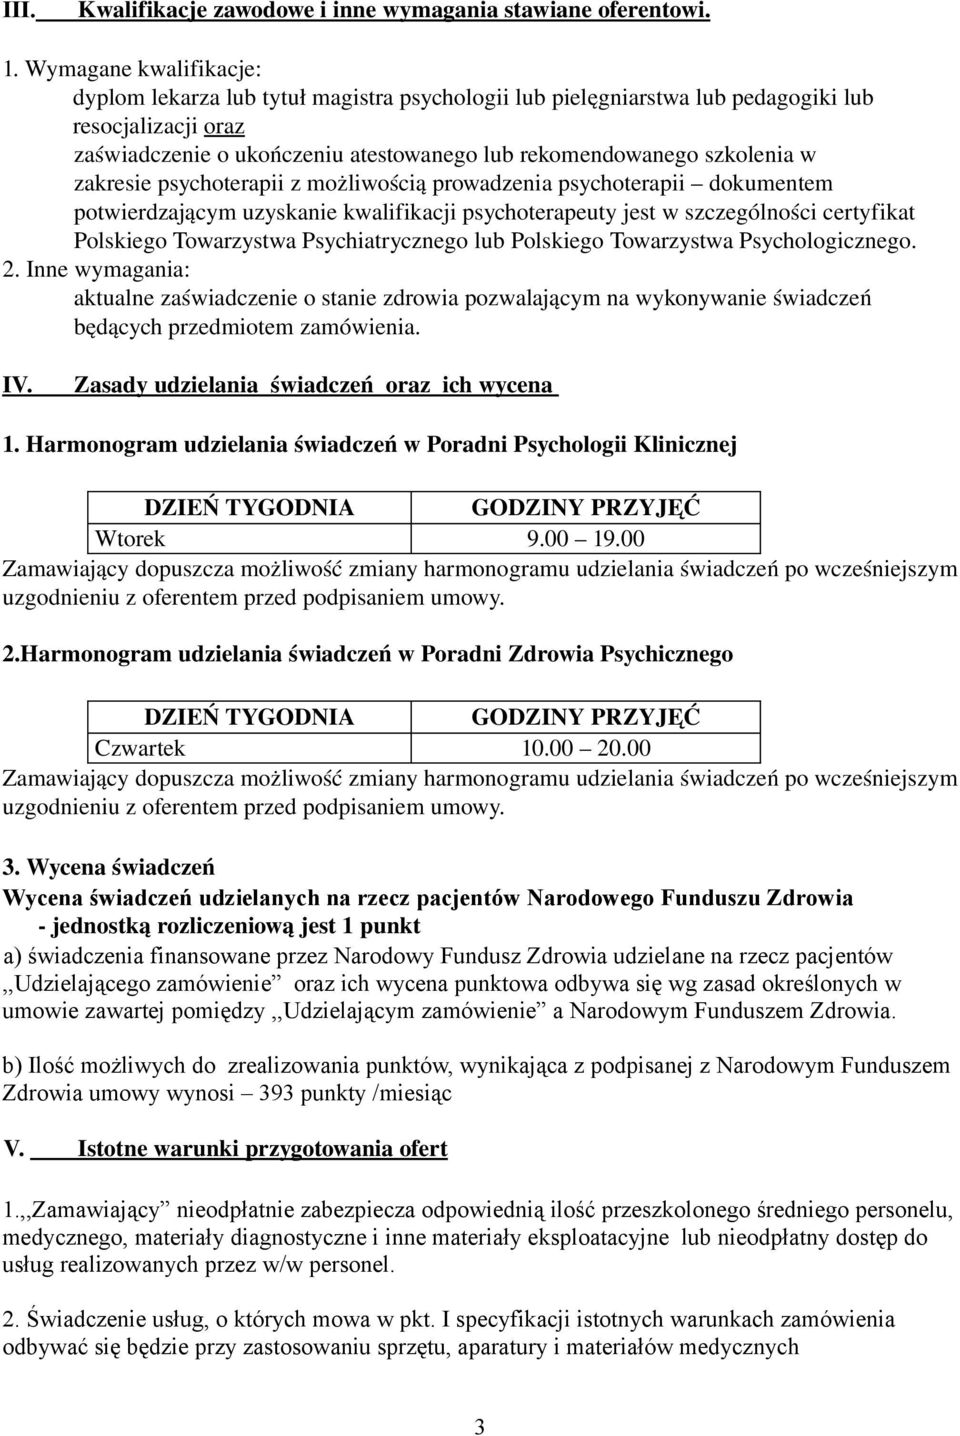 zakresie psychoterapii z możliwością prowadzenia psychoterapii dokumentem potwierdzającym uzyskanie kwalifikacji psychoterapeuty jest w szczególności certyfikat Polskiego Towarzystwa Psychiatrycznego